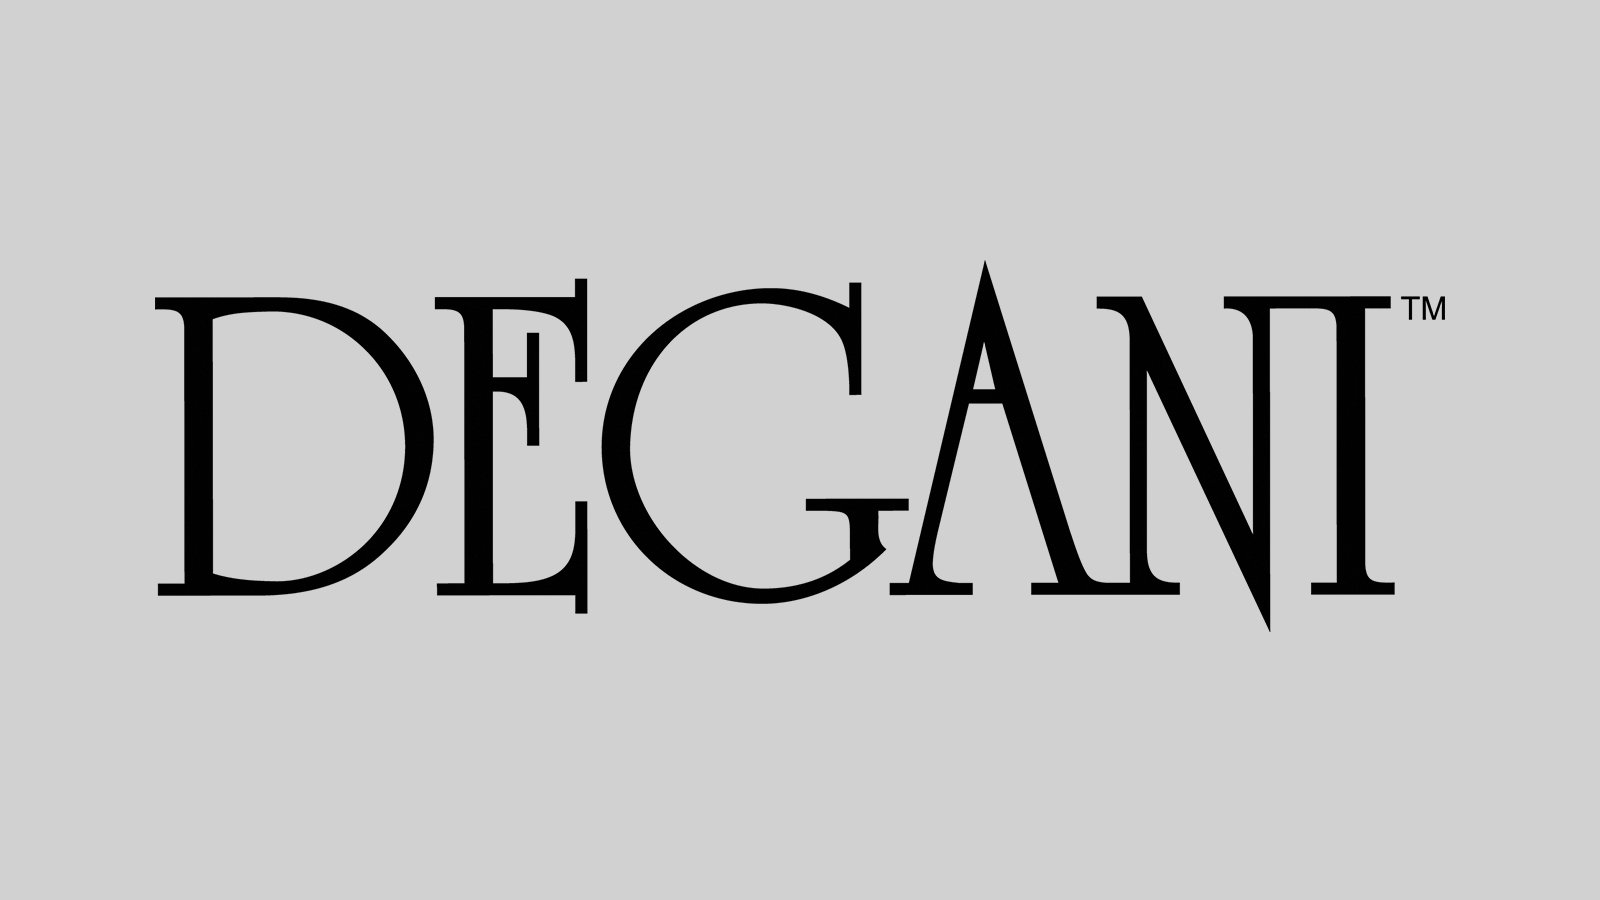 Degani-Logo-Grey-BG-1.jpg